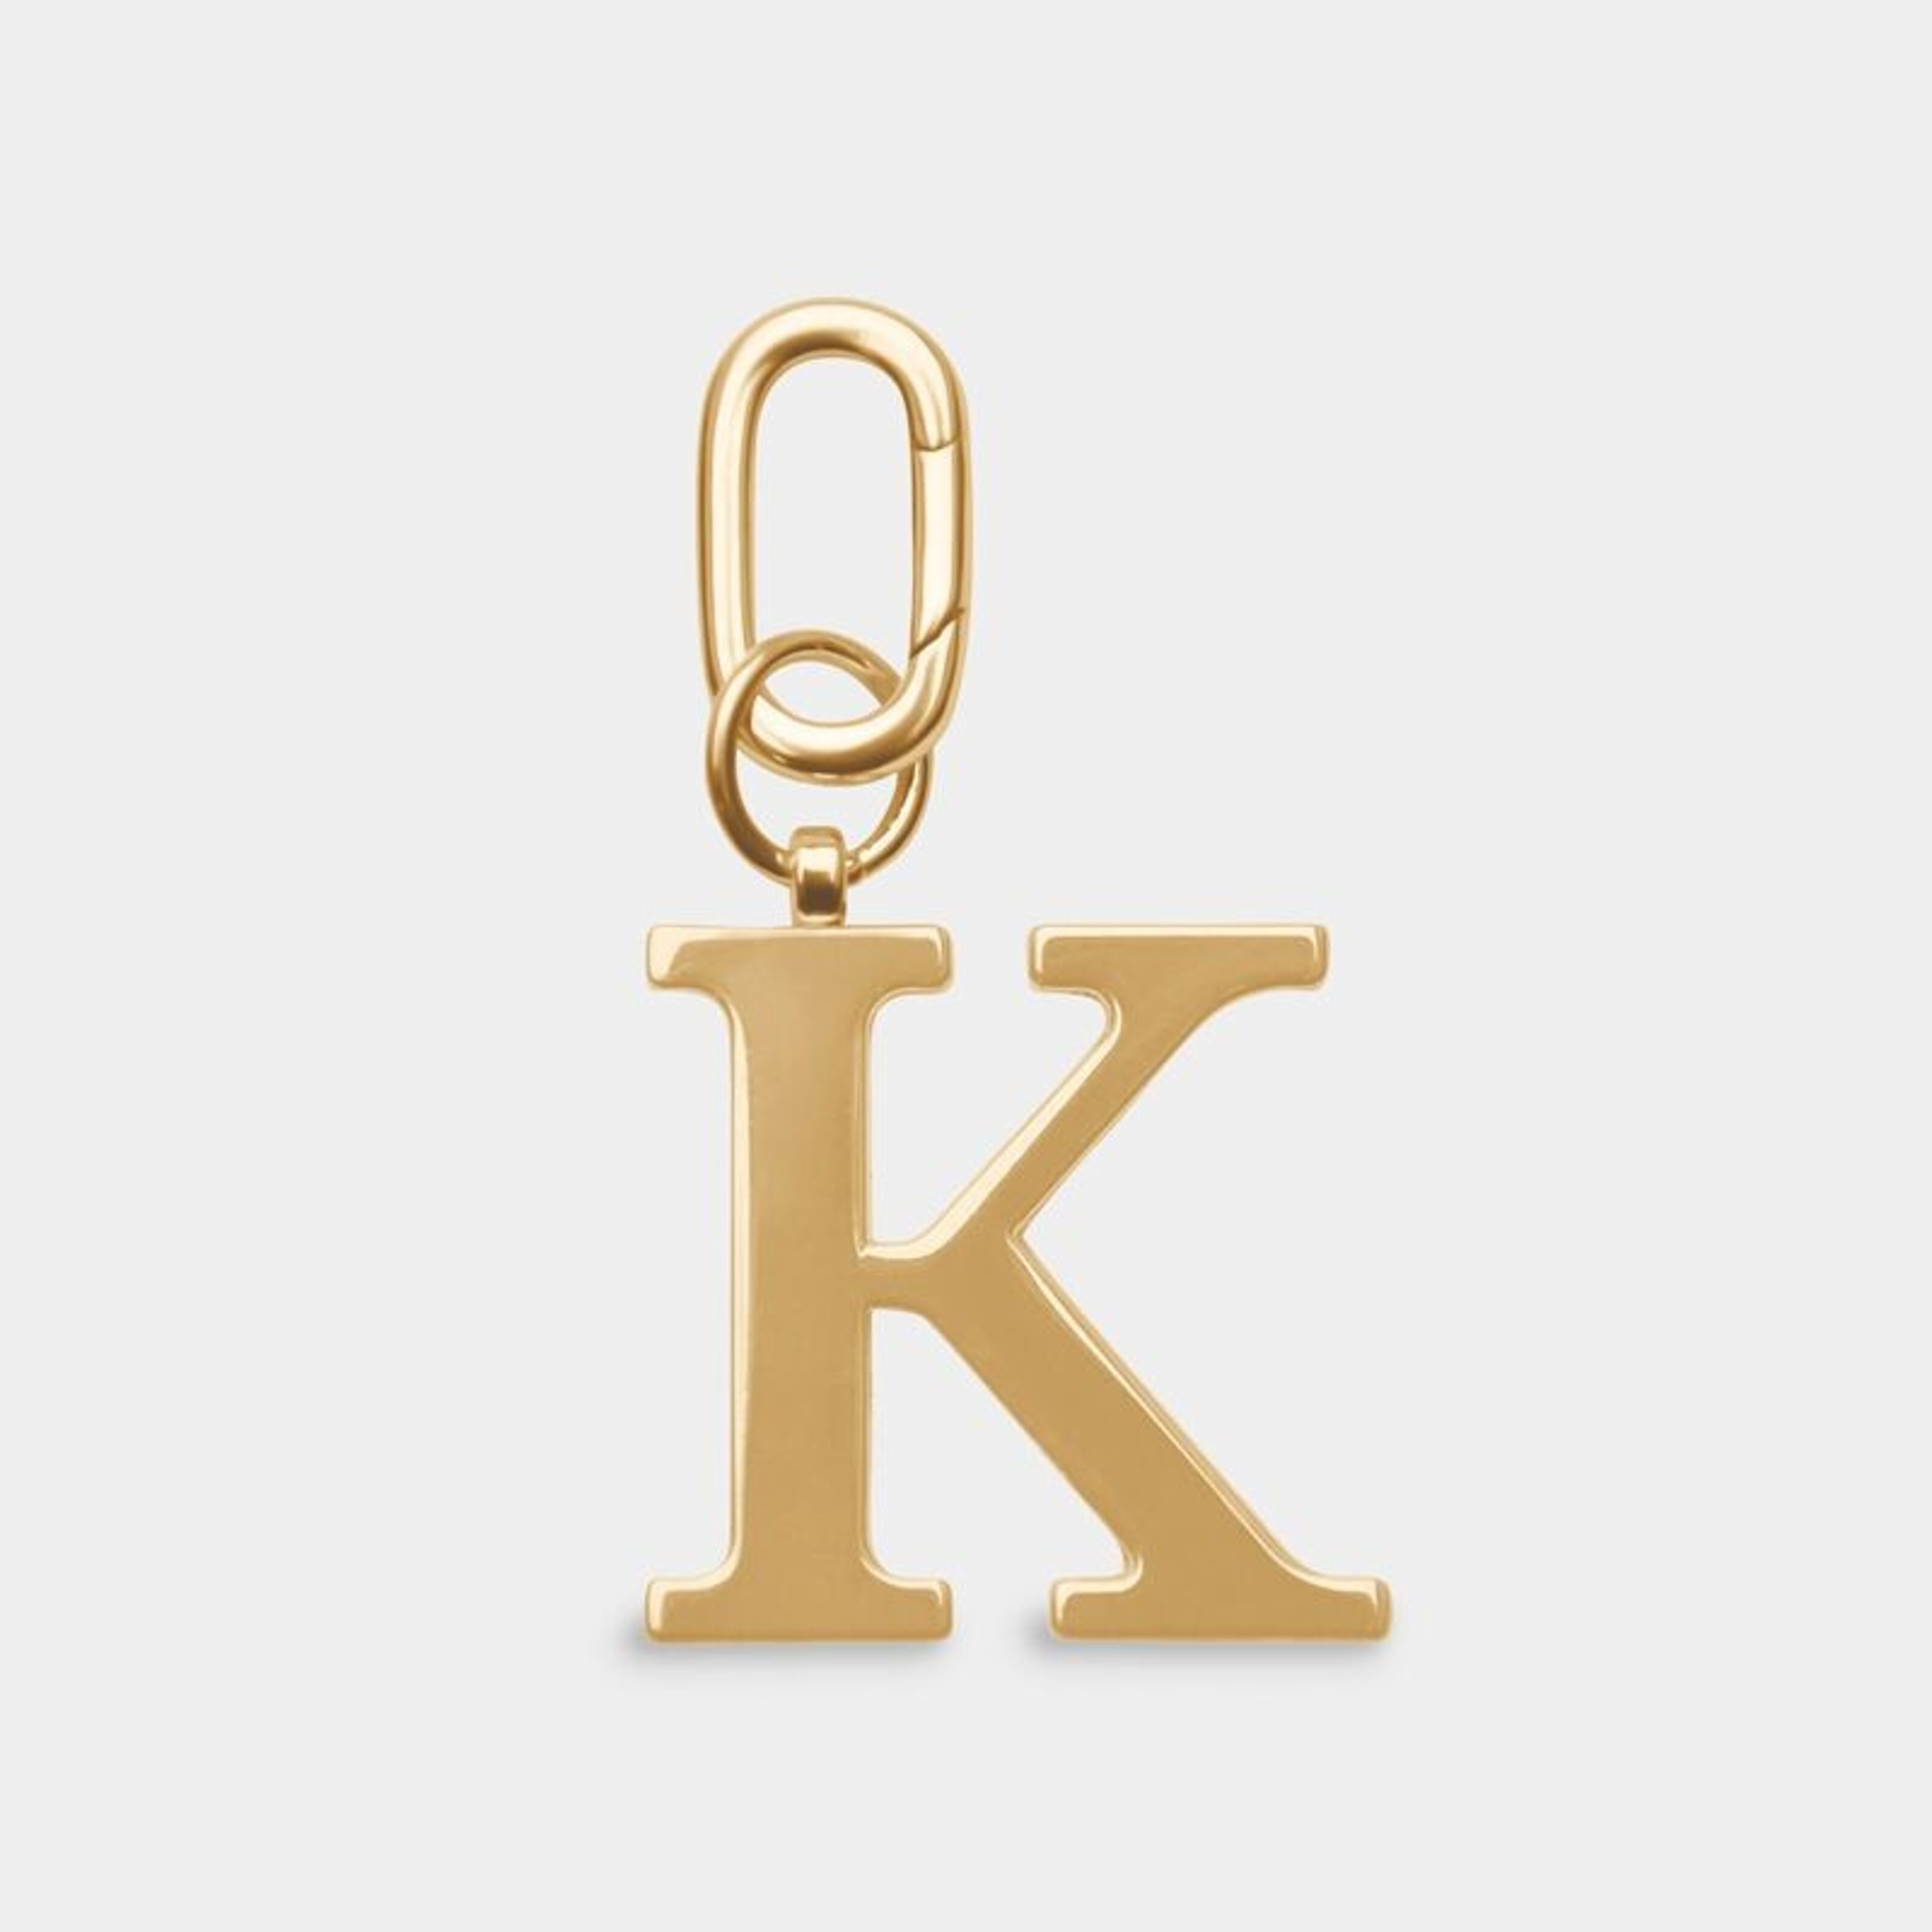 Kaufen Sie K – Goldfarbener Metall-Buchstaben-Schlüsselanhänger zu  Großhandelspreisen